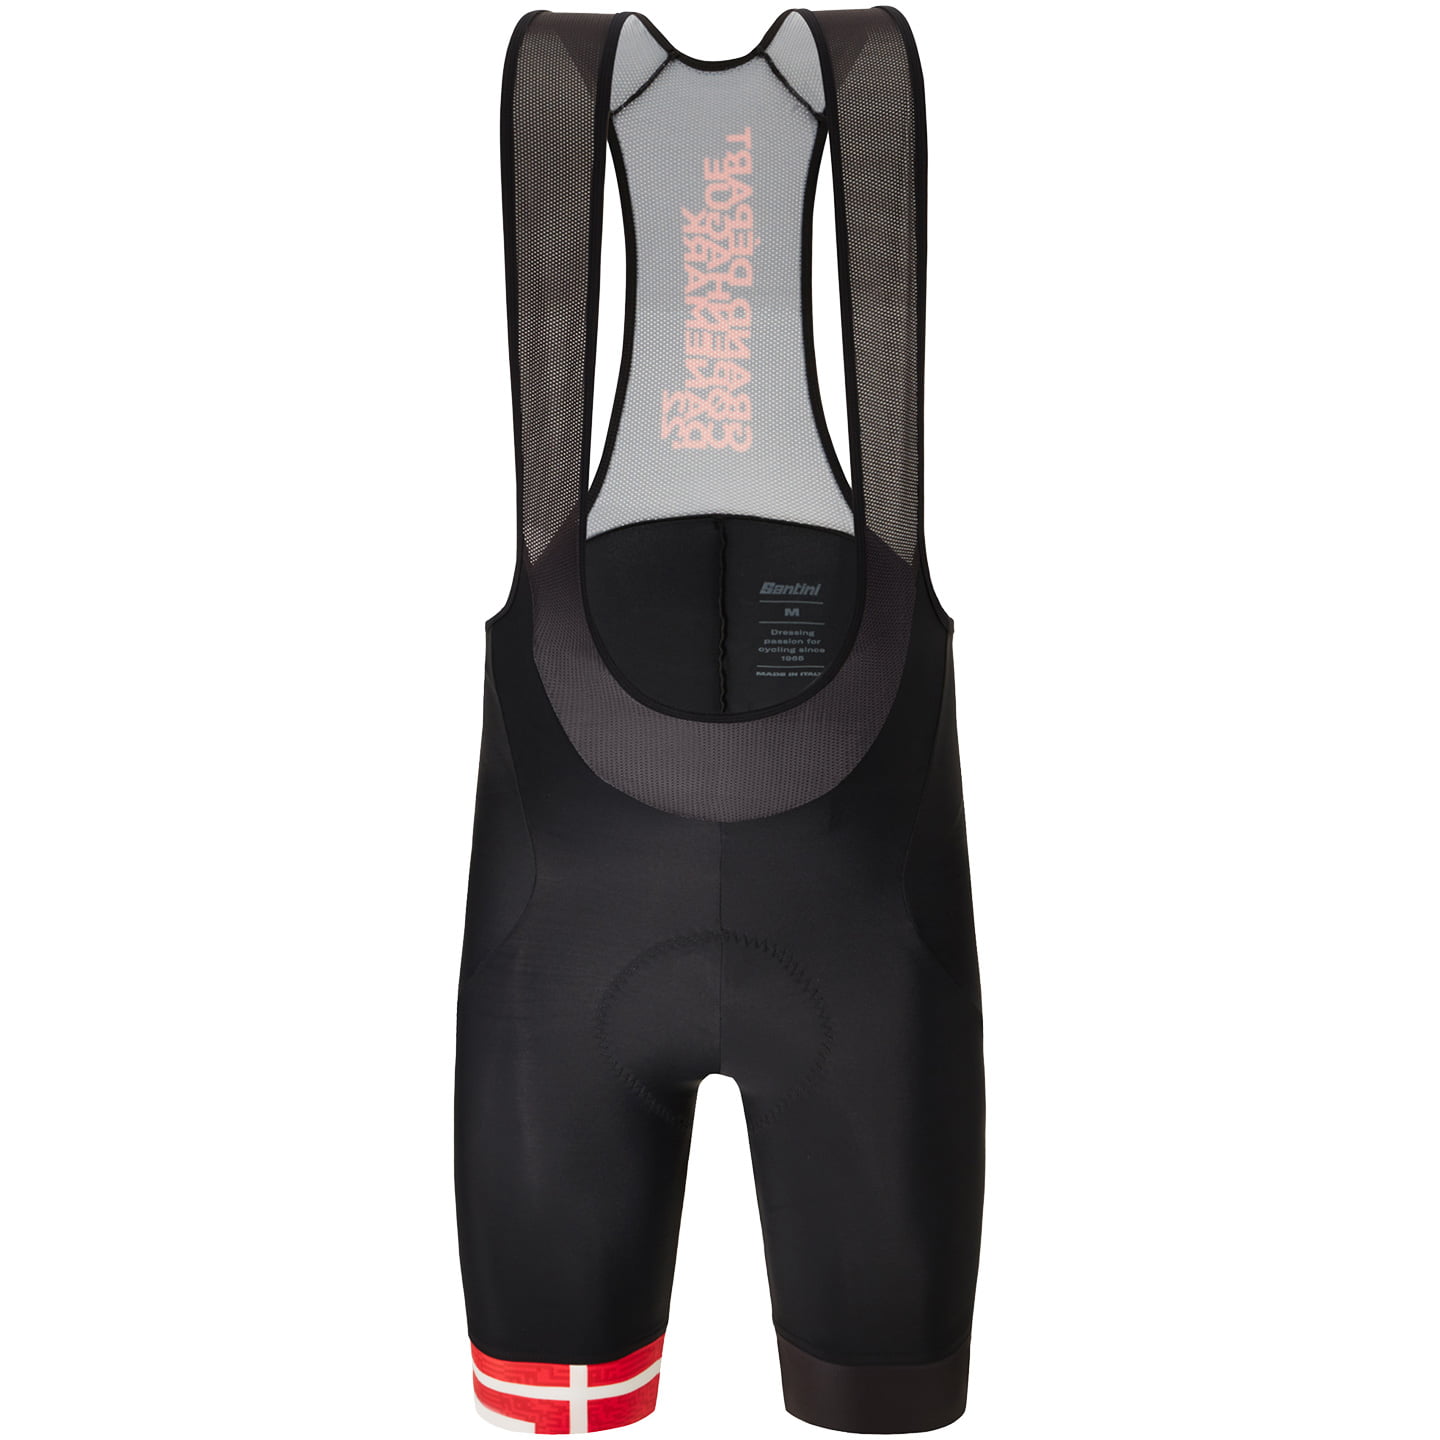 TOUR DE FRANCE Kopenhagen 2022 Bib Shorts, for men, size L, Cycle shorts, Cycling clothing